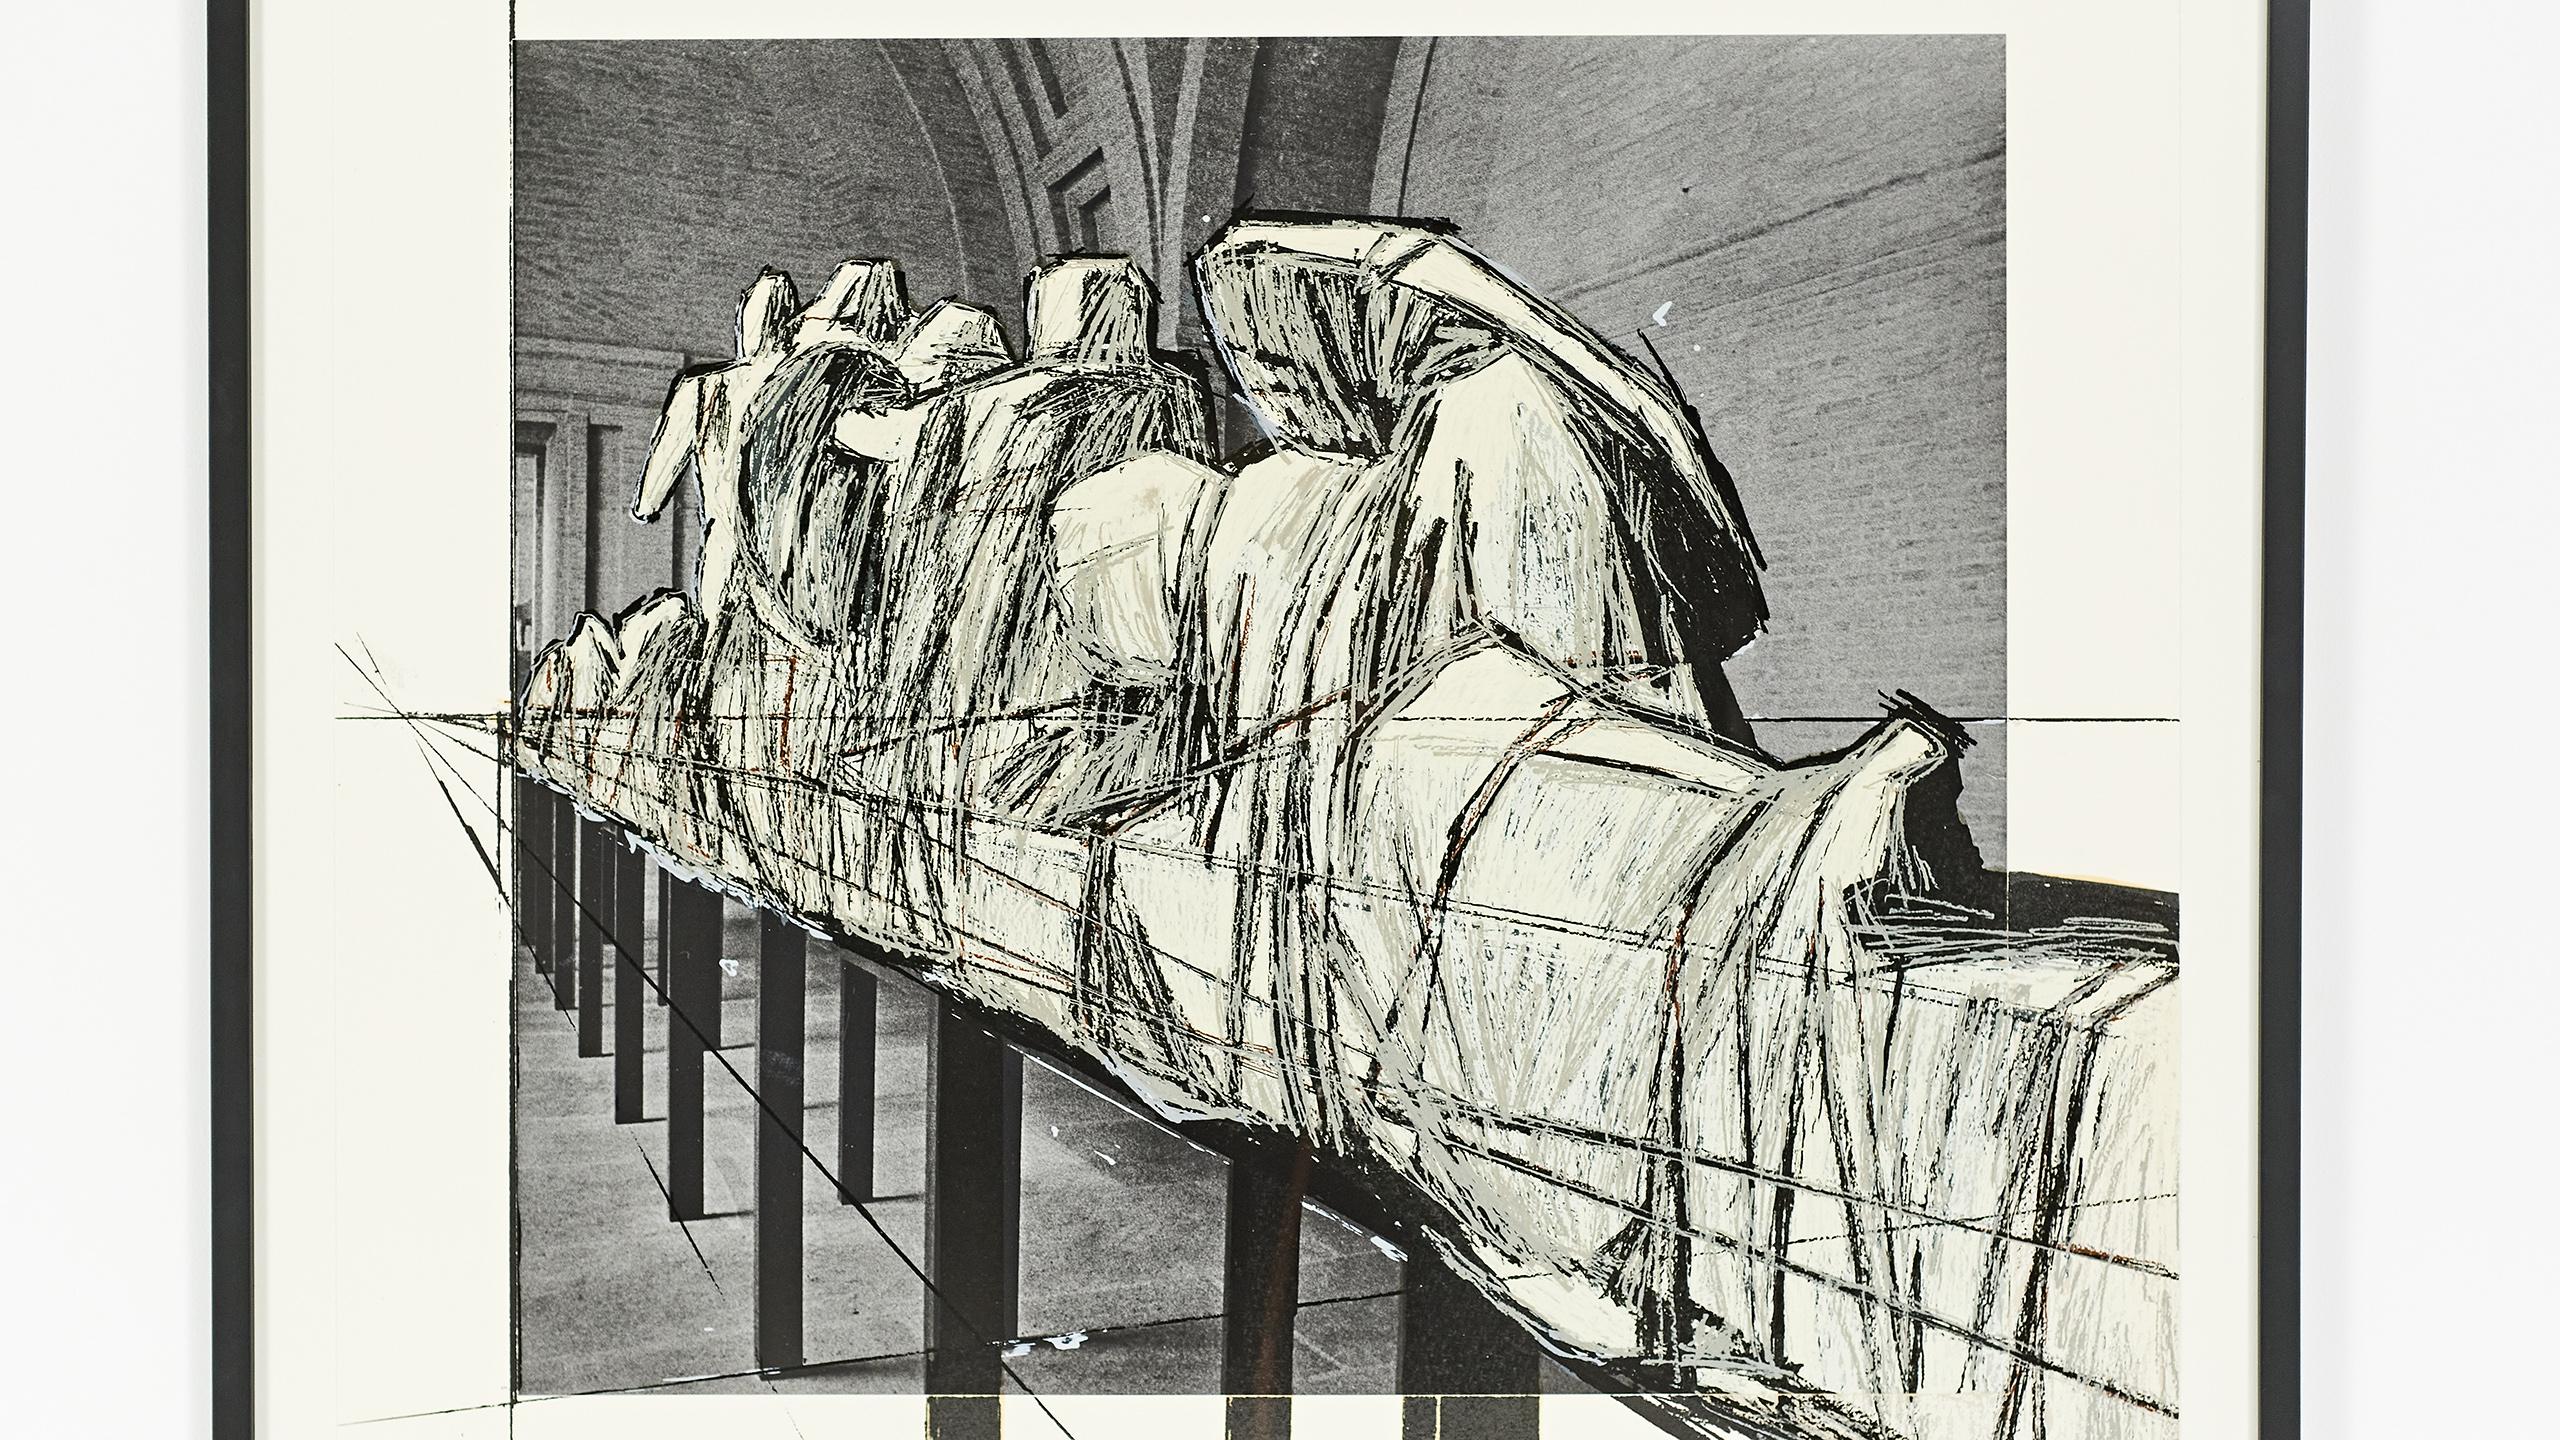 European Christo, “Wrapped Statues”, Mixed Media, 1988